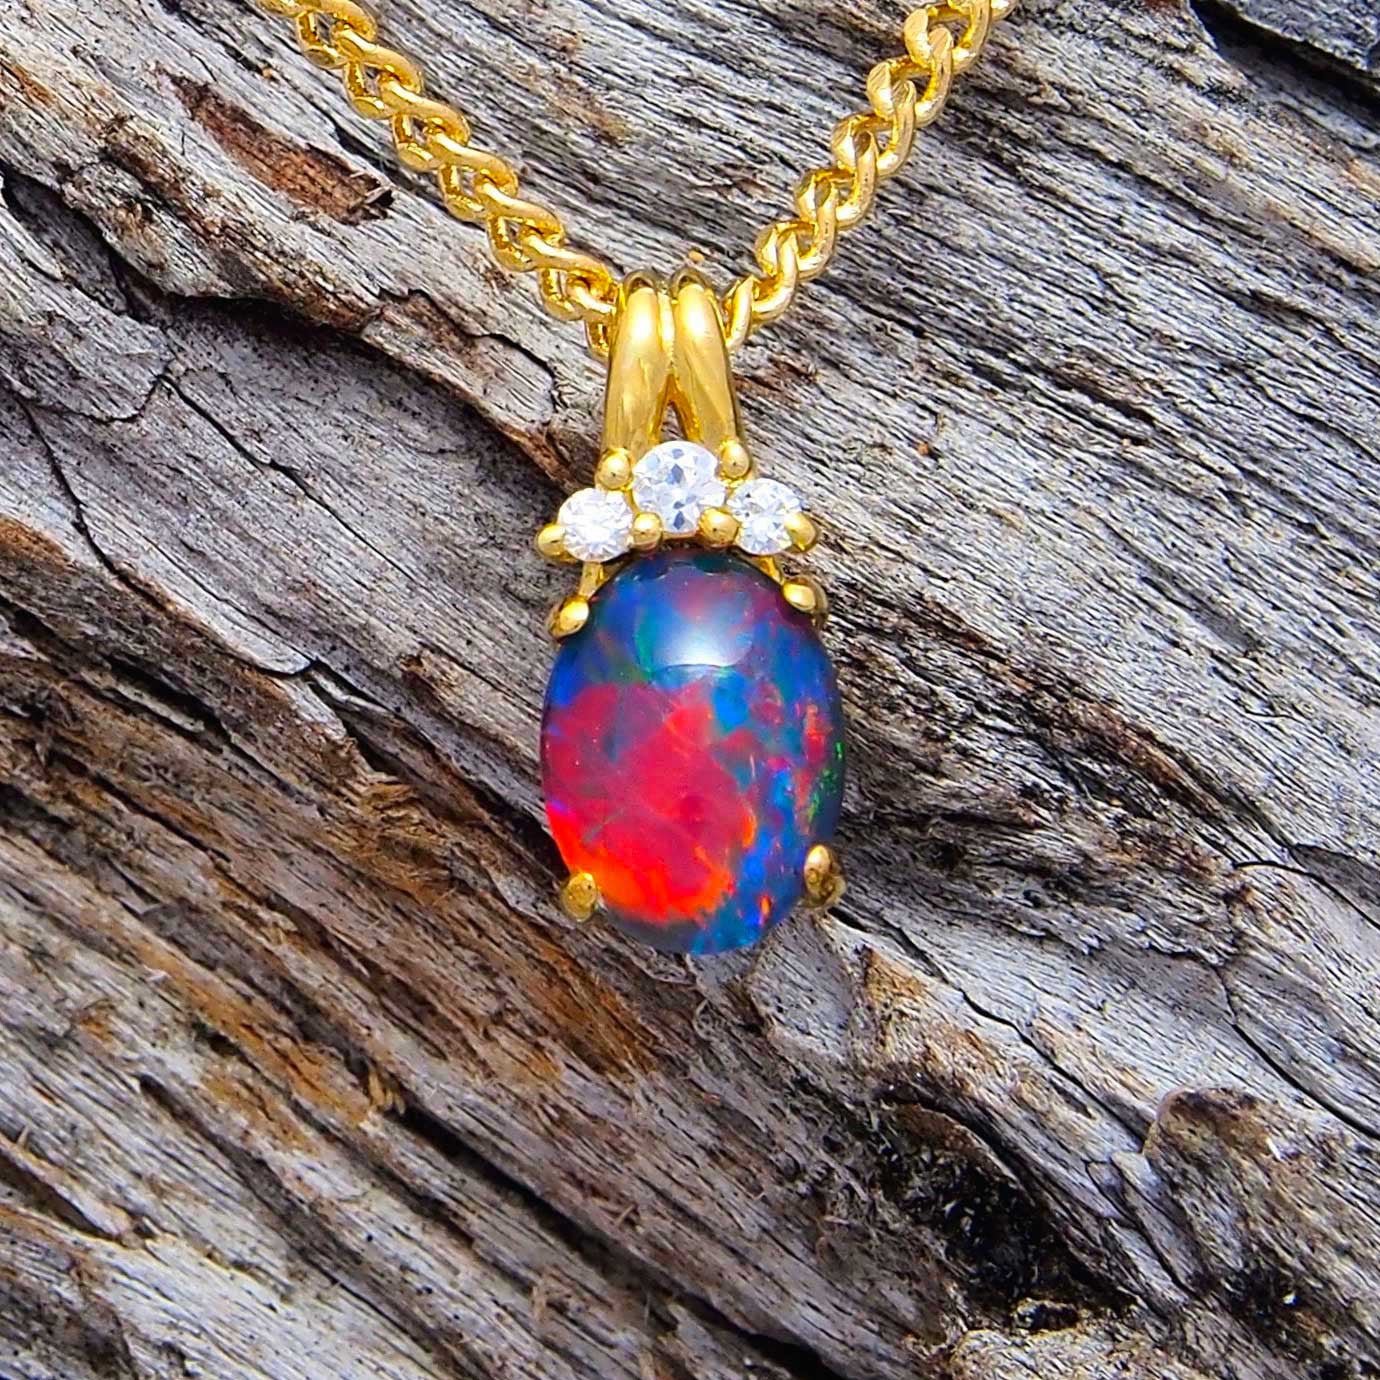 Crown' Australian Opal Pendant - Black Star Opal